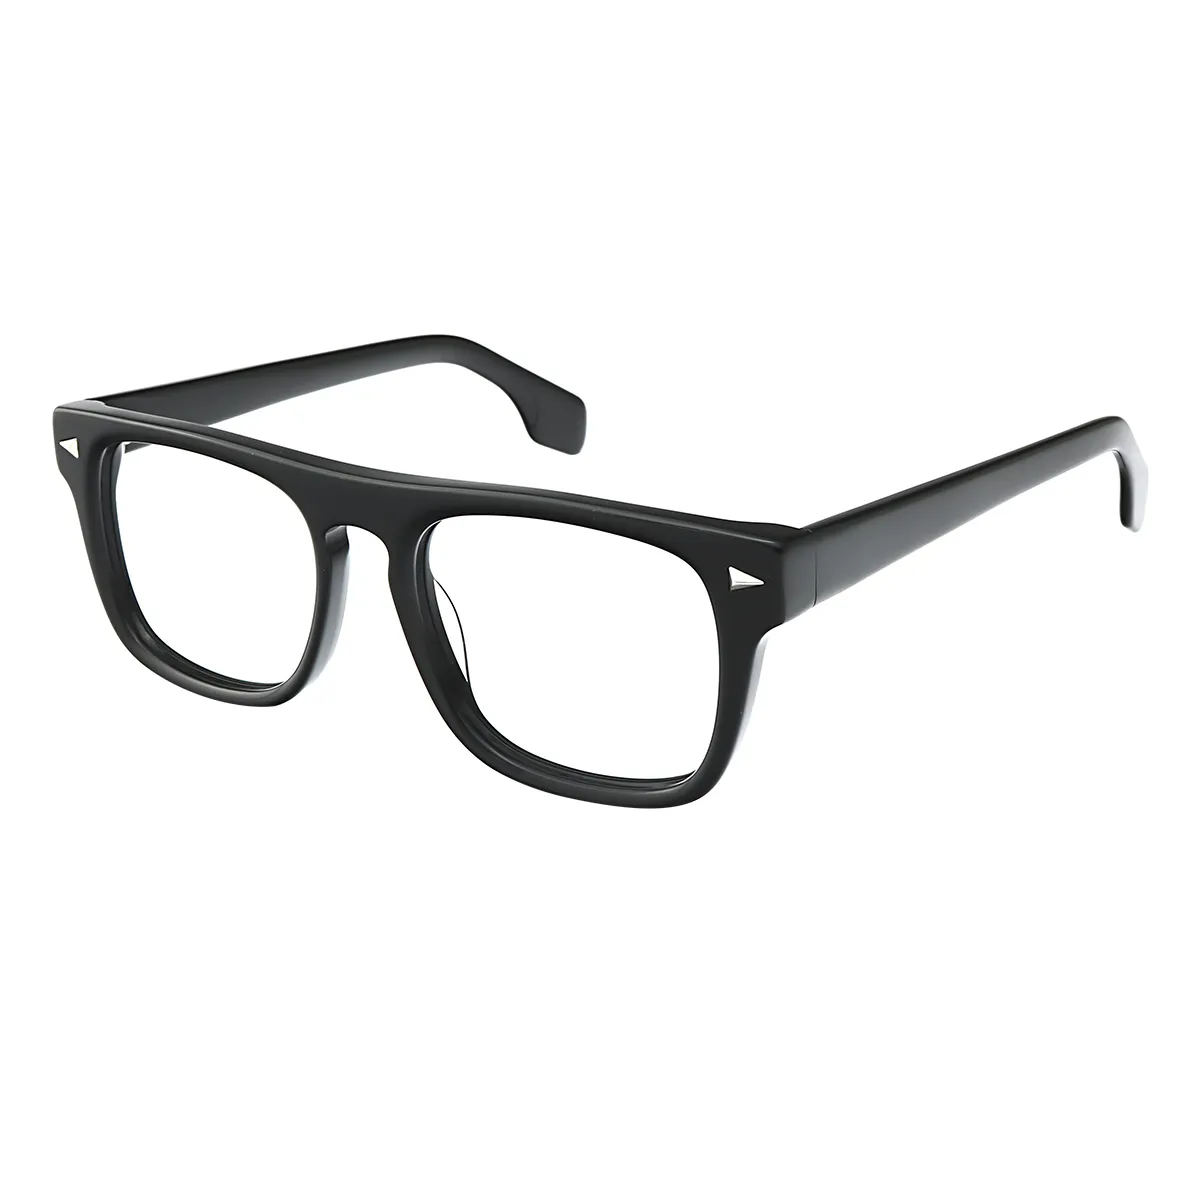 Classic Square Black Eyeglasses for Women & Men